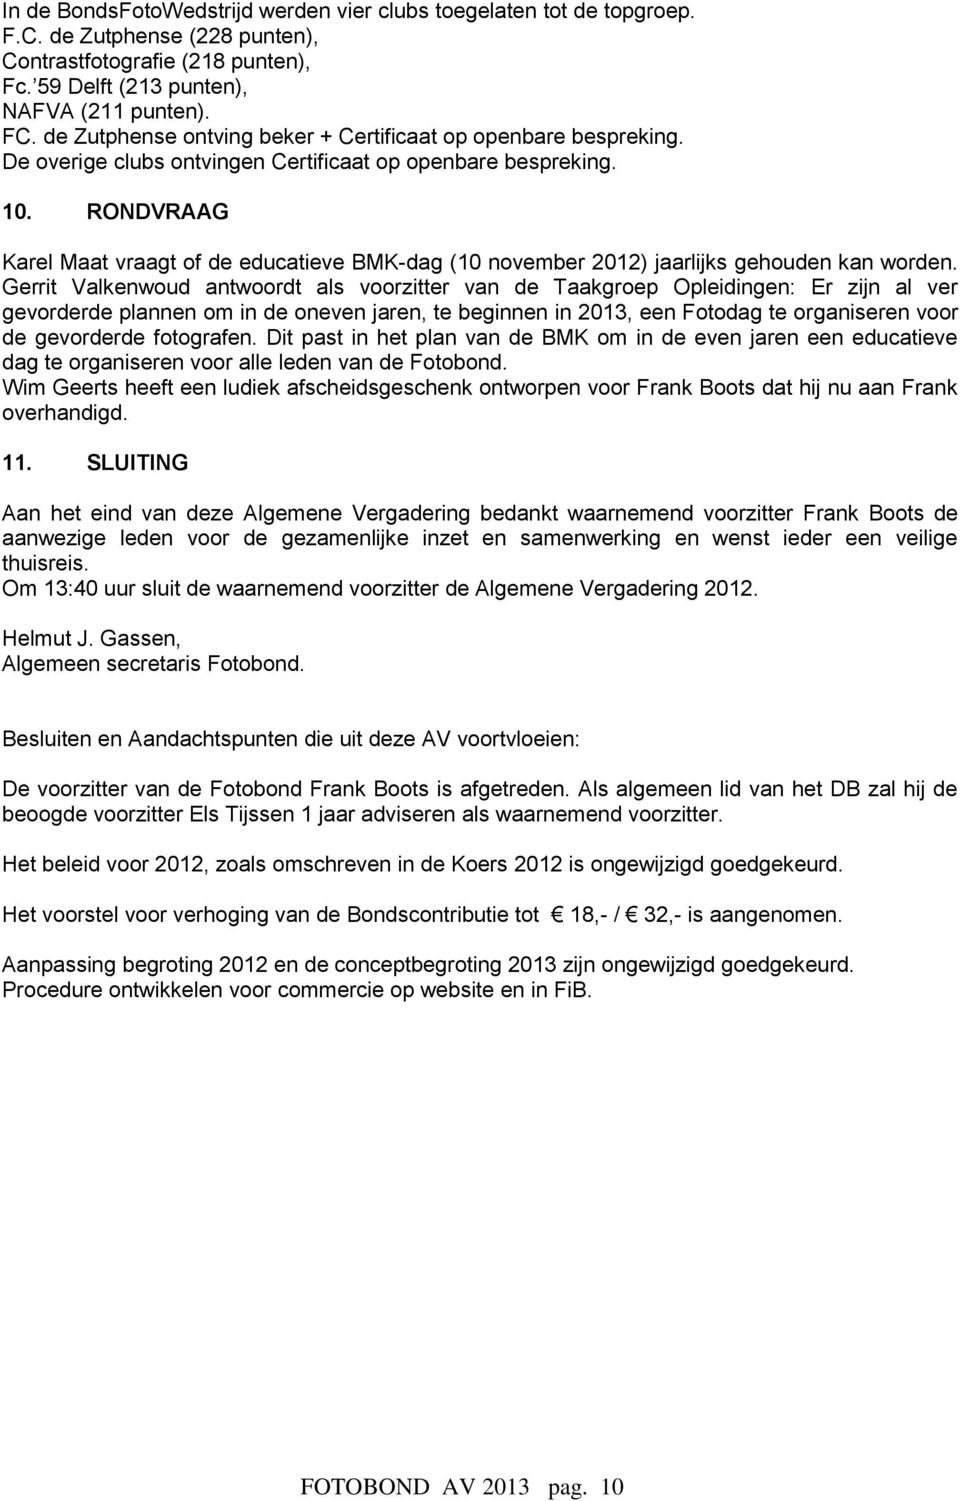 RONDVRAAG Karel Maat vraagt of de educatieve BMK-dag (10 november 2012) jaarlijks gehouden kan worden.